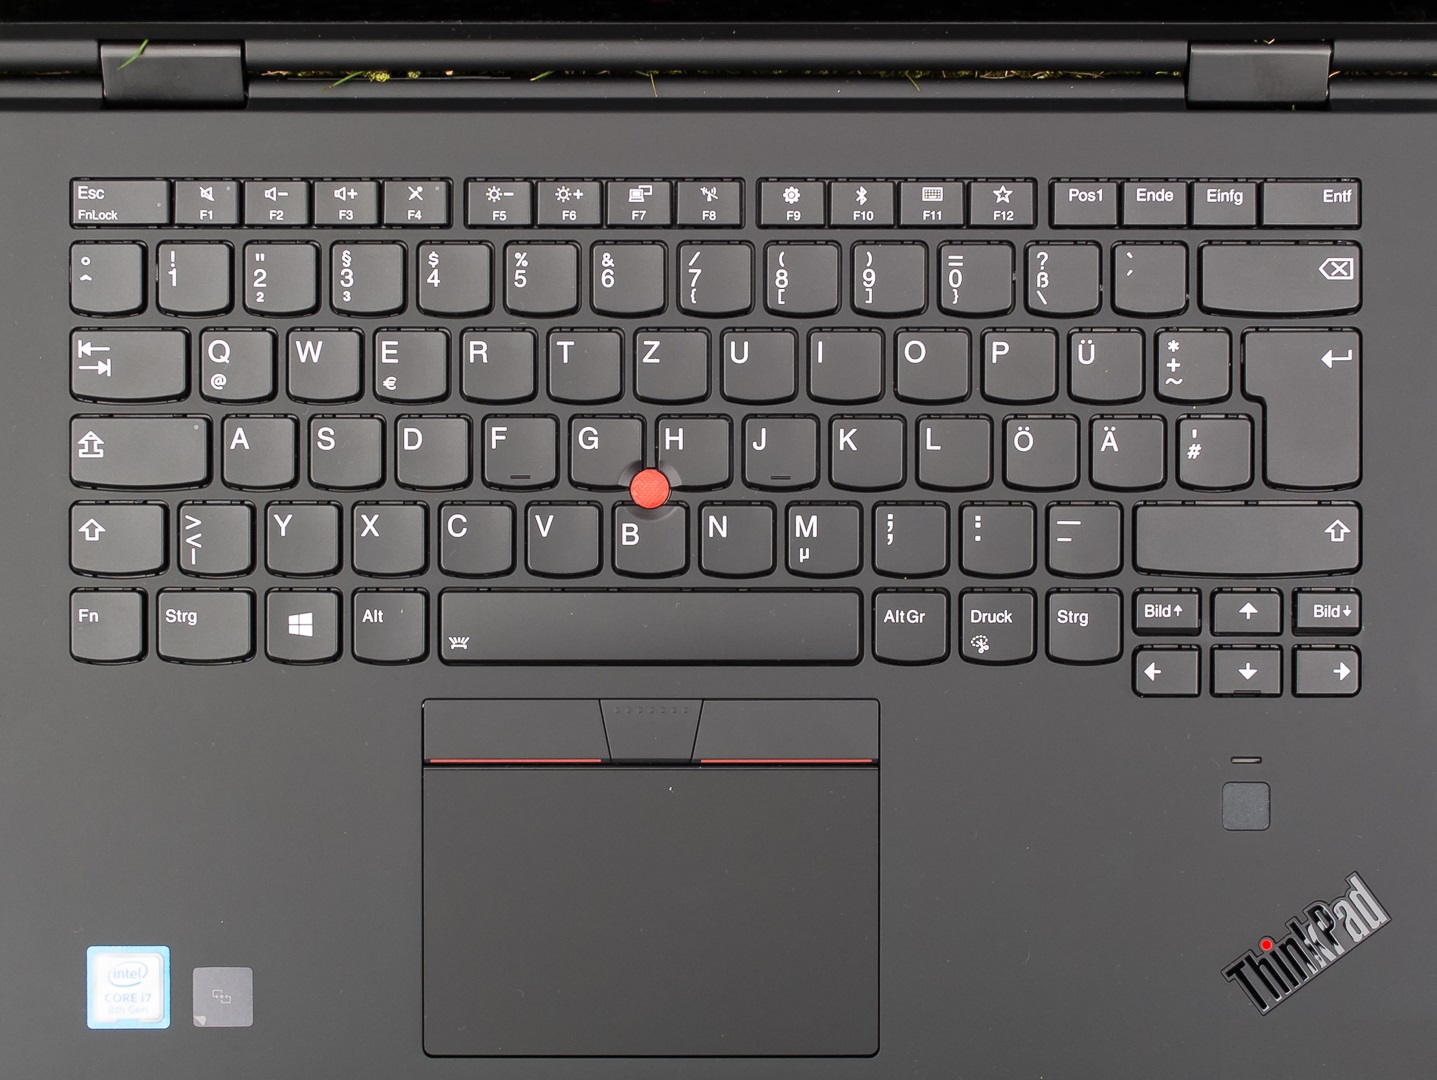 Đánh giá Thinkpad X1 Yoga Gen 3: Laptop 2 trong 1 bền, màn hình đẹp, Chuyên trang tư vấn về laptop